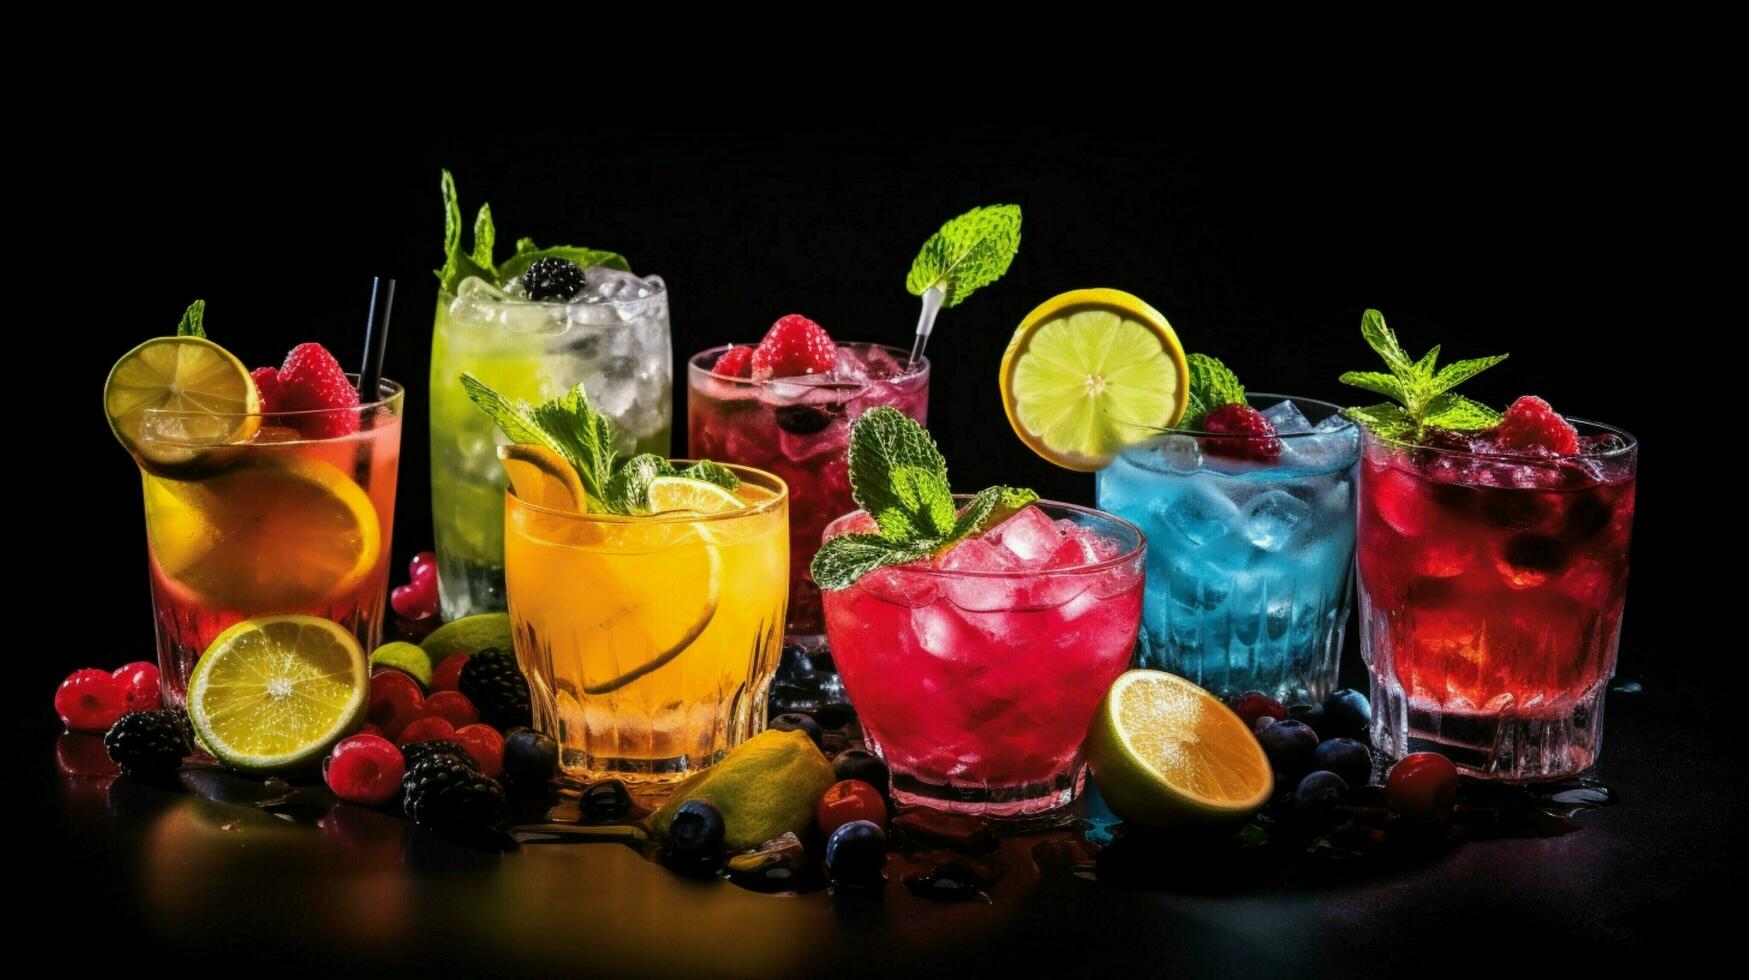 Frais fruit des cocktails dominer le été vie nocturne scène photo